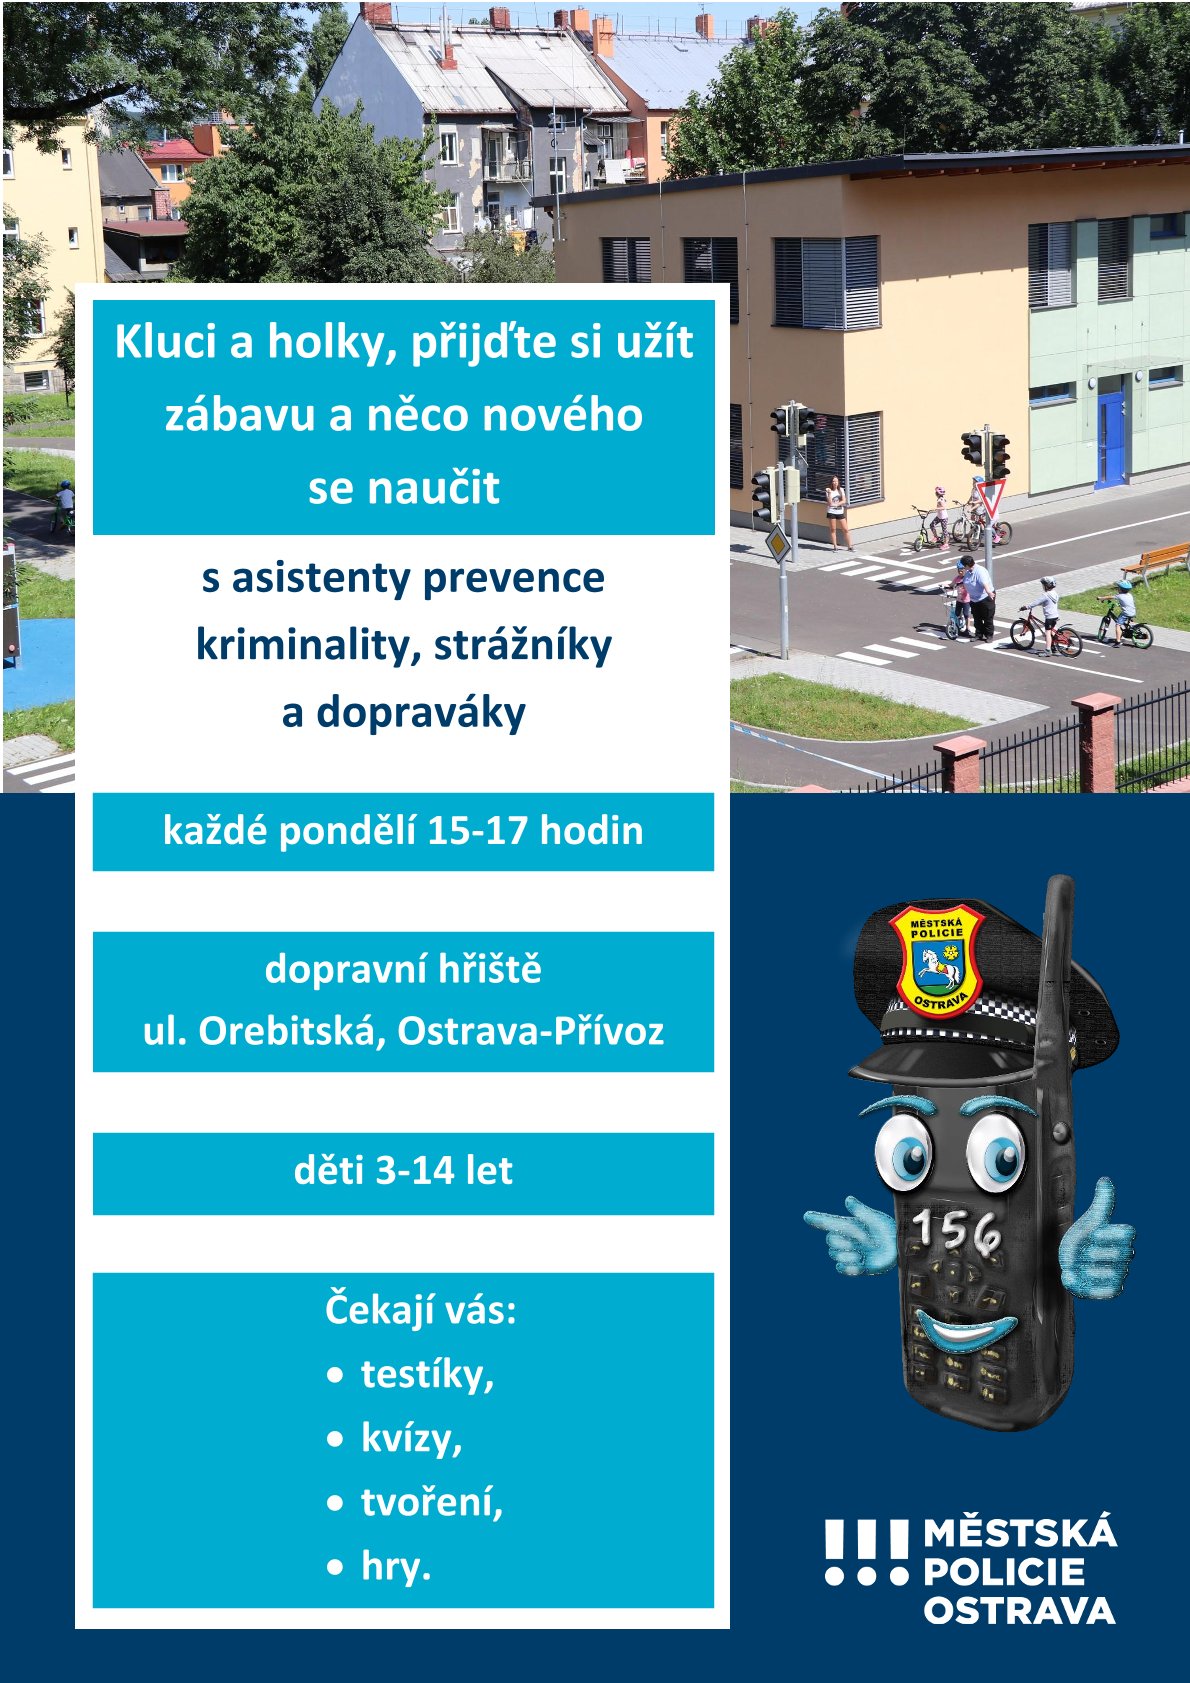 Preventivní aktivity Městská policie Ostrava, Sociální věci Ostrava